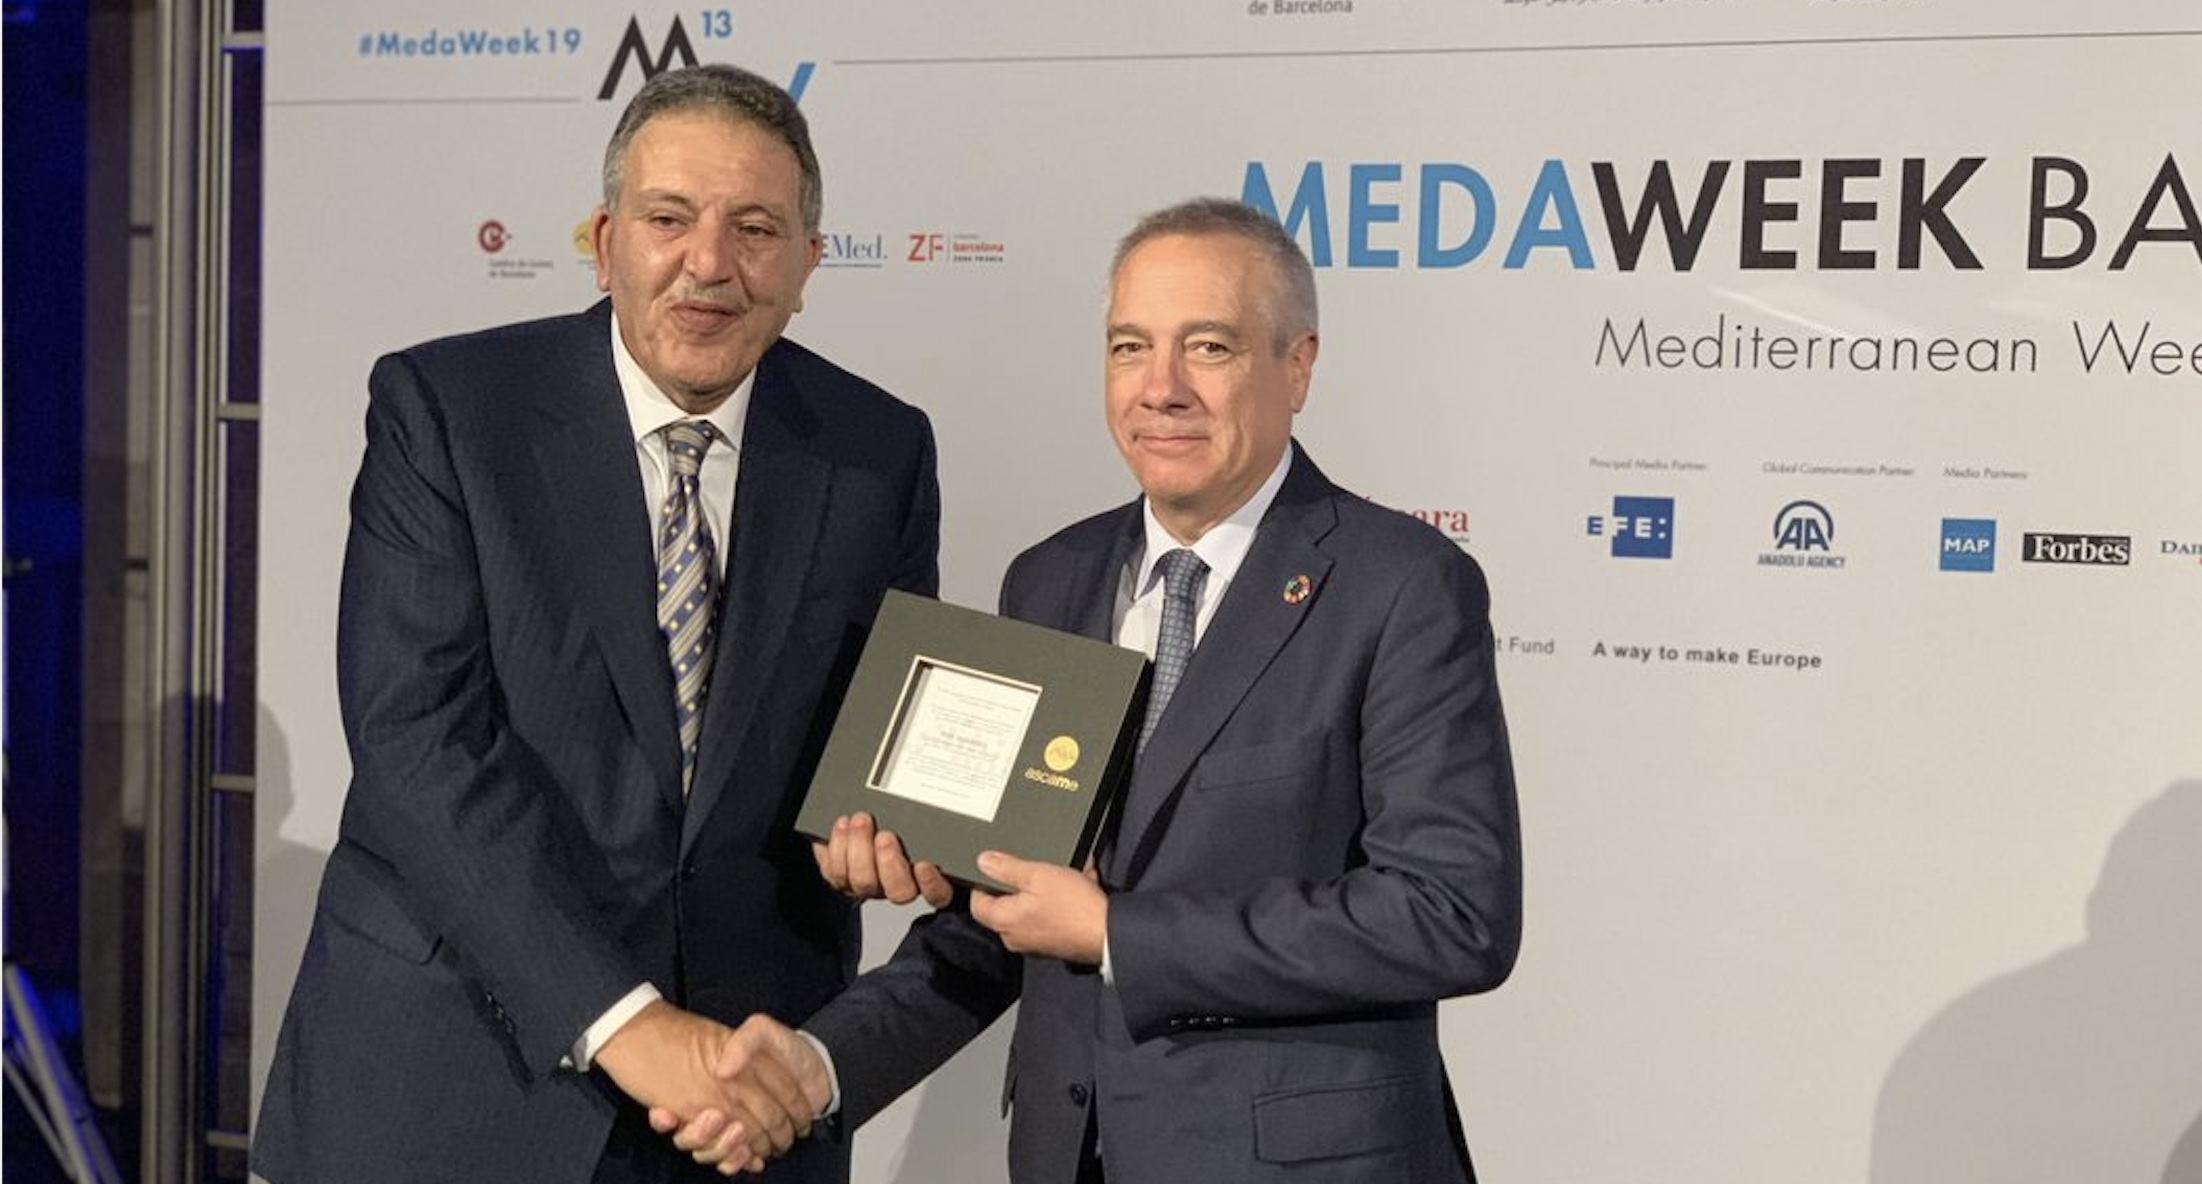 La Medaweek 2019 distingue al Consorci de la Zona Franca de Barcelona con el Mediterranean Award